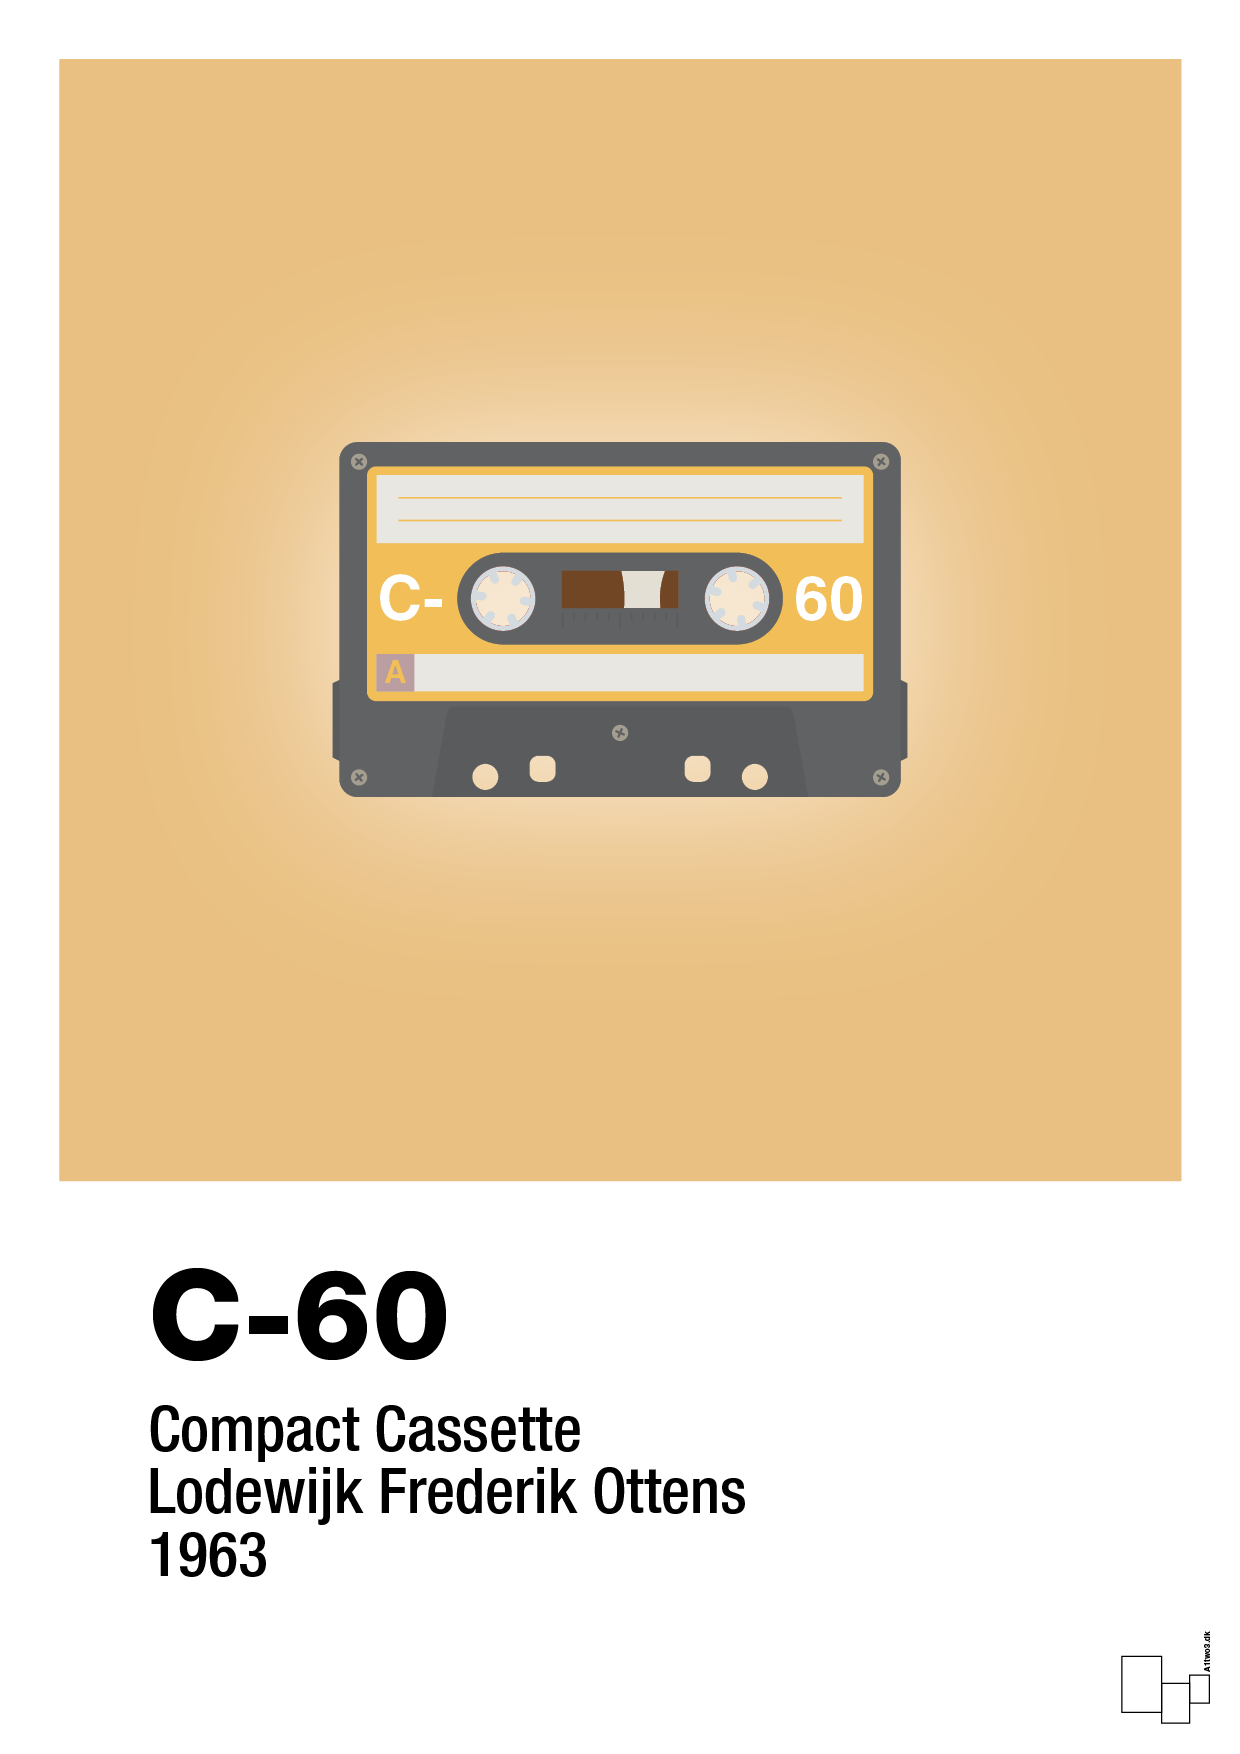 kassettebånd c-60 - Plakat med Grafik i Charismatic